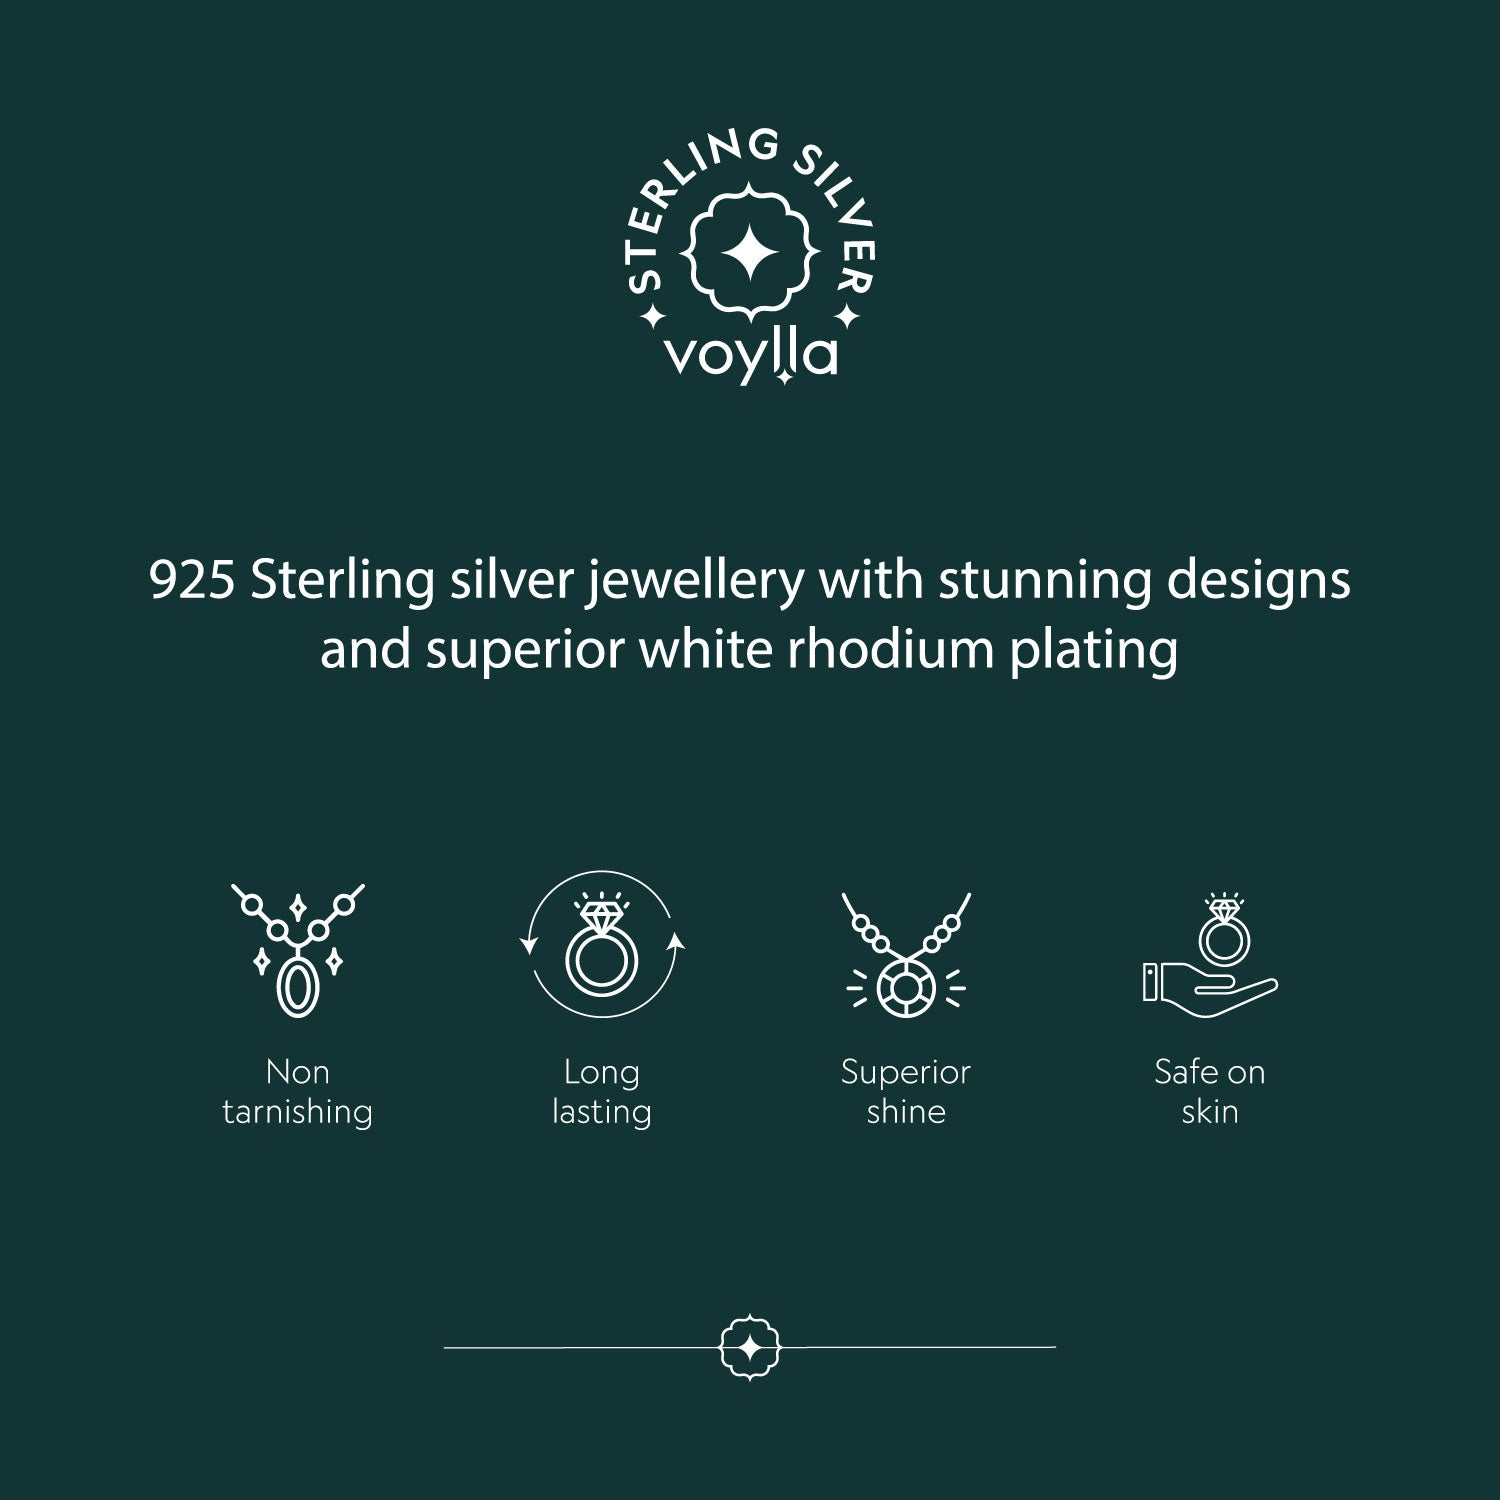 Petite Blue CZ Stud 925 Sterling Silver Earring